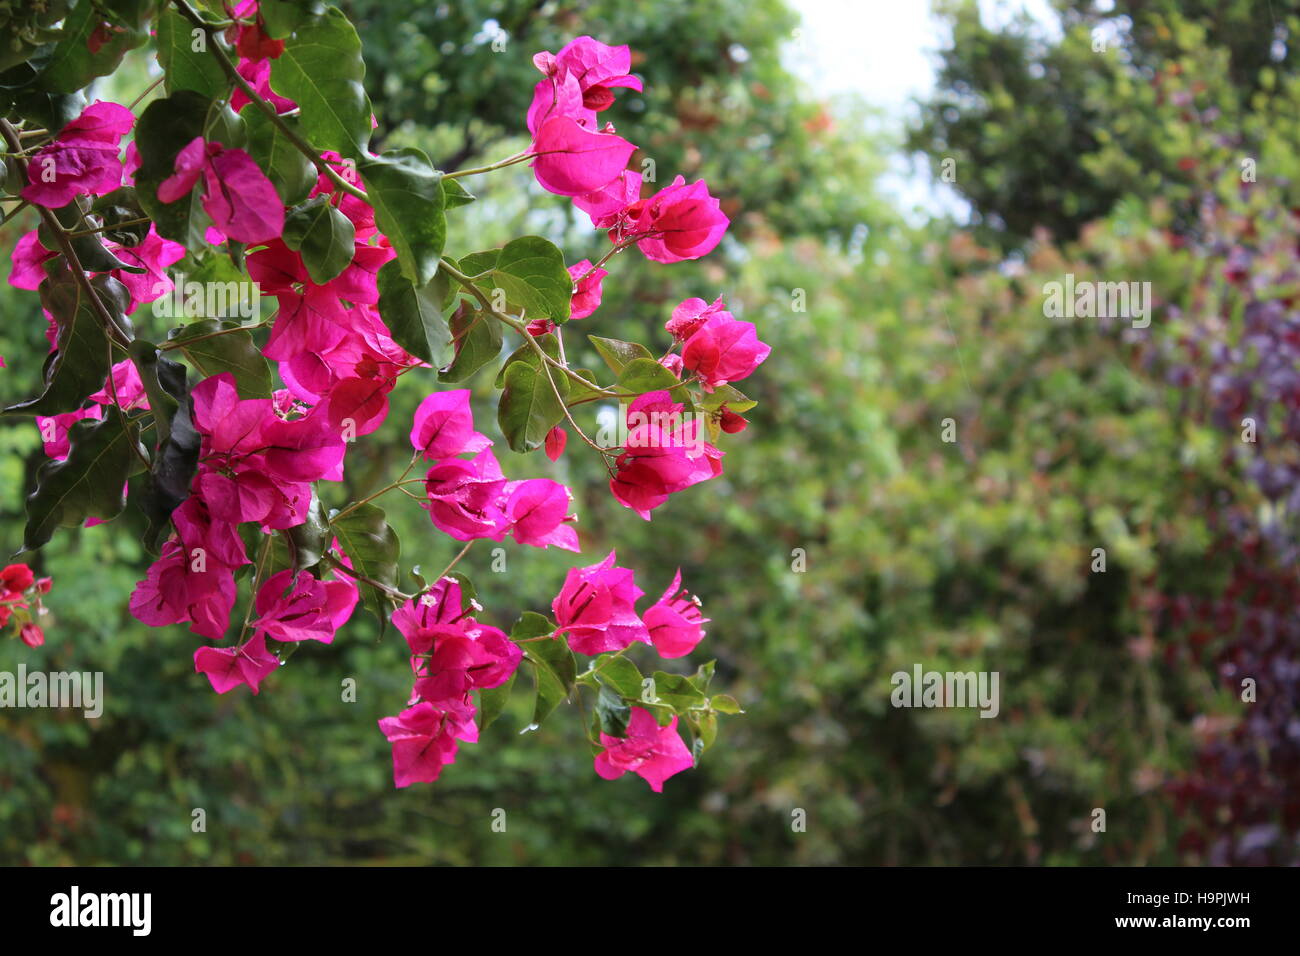 Fiori pendenti rosa immagini e fotografie stock ad alta risoluzione - Alamy